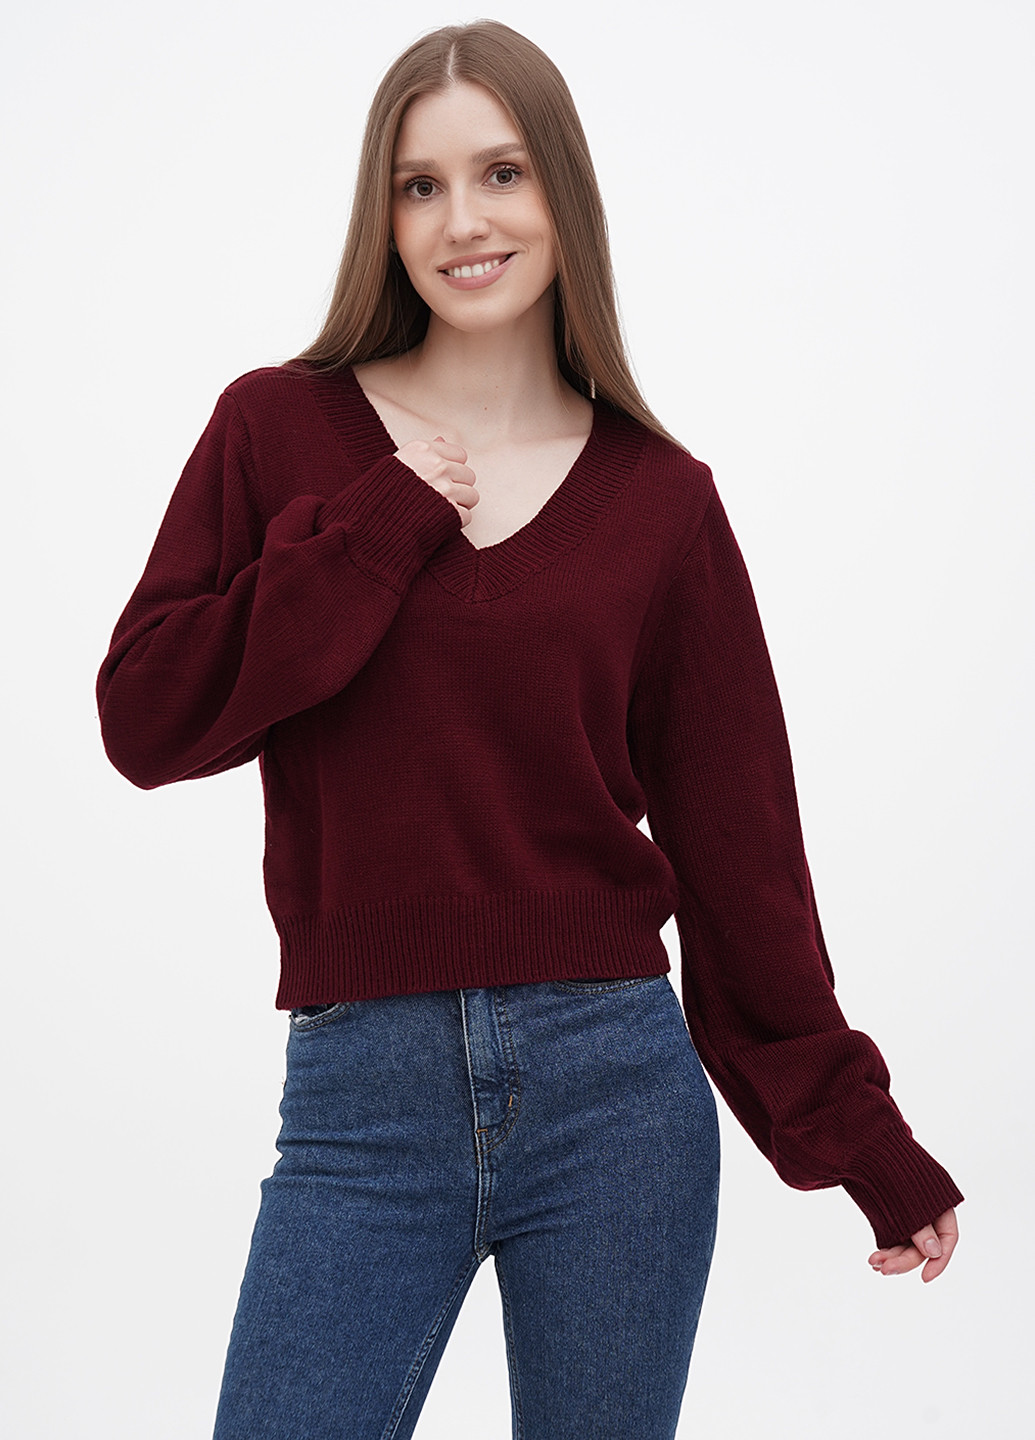 Бордовый демисезонный пуловер пуловер ZAFUL